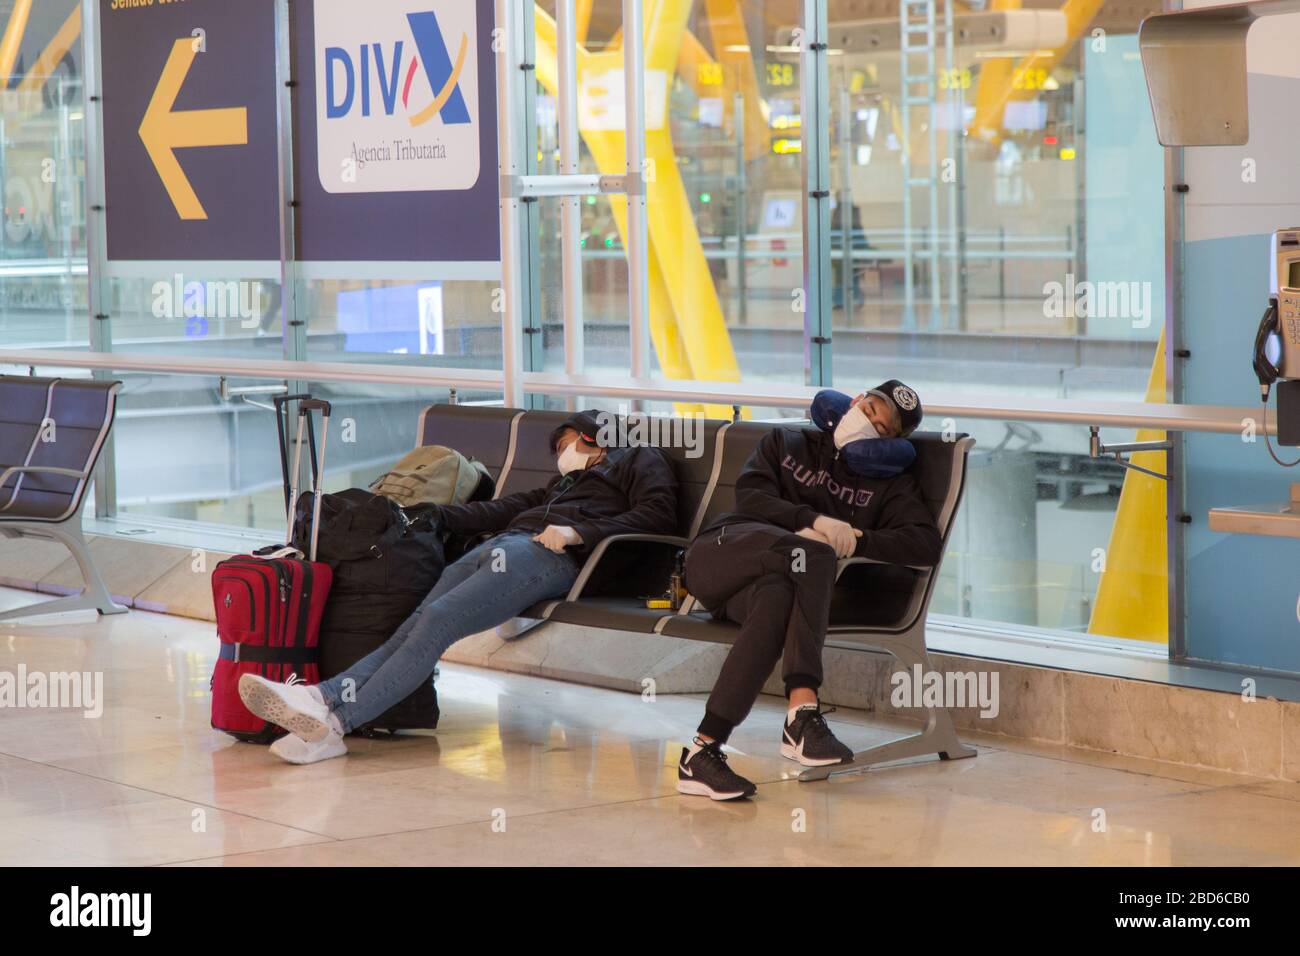 Madrid, Spagna. 7 aprile 2020. Alcune persone riposano con la maschera in attesa di uno dei pochi voli che partono in questi giorni da Madrid, a causa dello stato di Aralma dal Covid-19. (Foto di Fer Capdecon Arroyo/Pacific Press) Credit: Pacific Press Agency/Alamy Live News Foto Stock